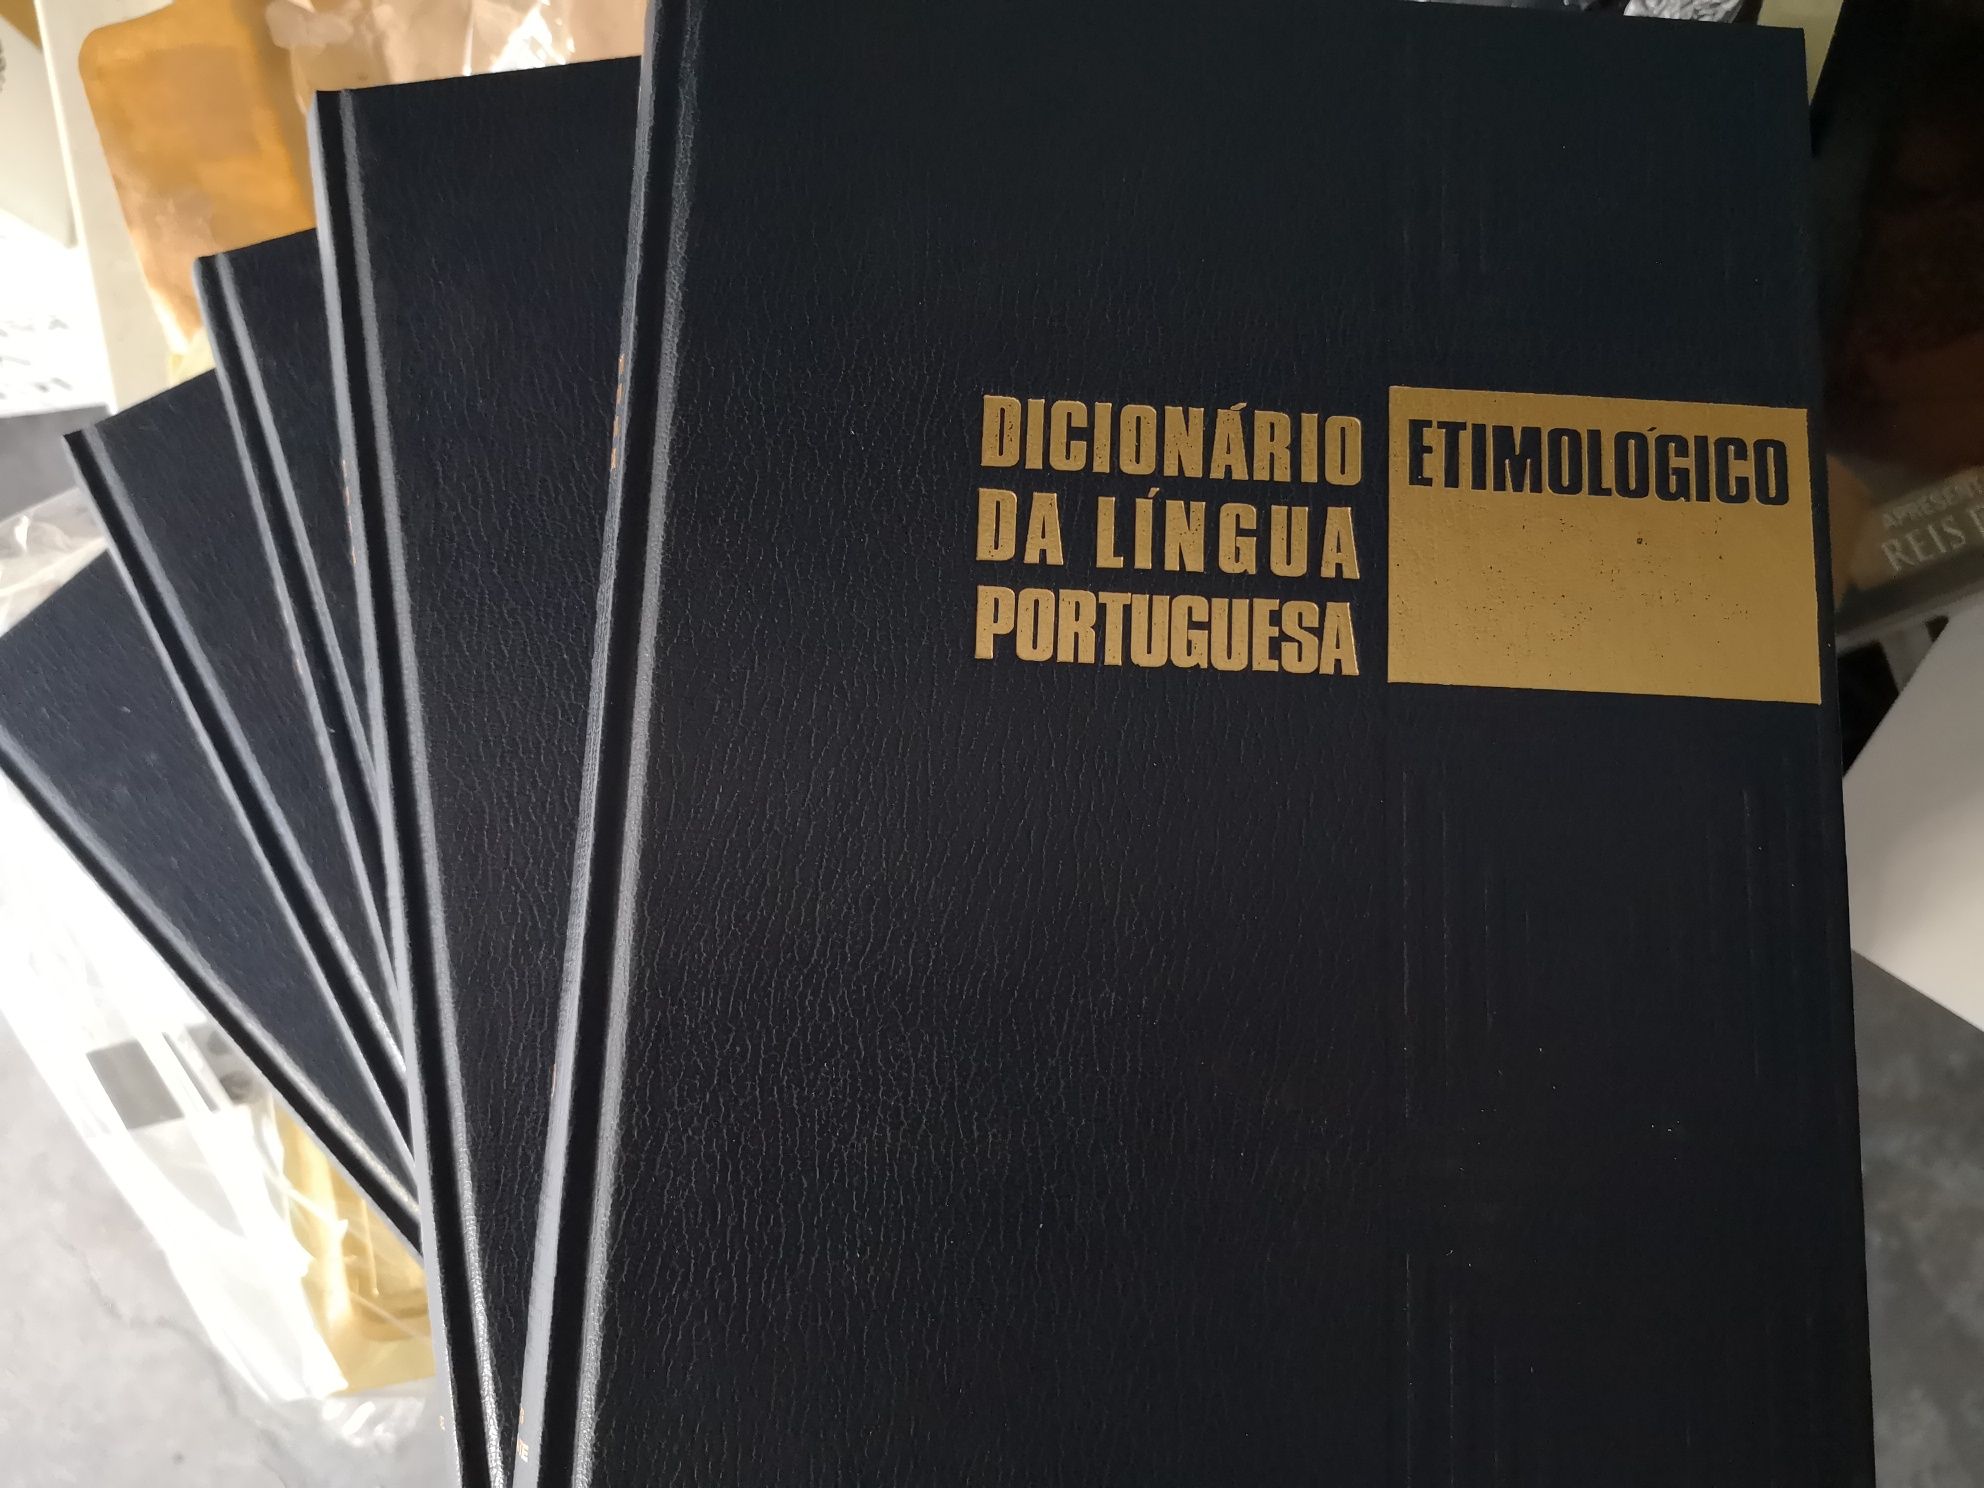 Dicionário etimológico da língua portuguesa - 5 vol. - J. Pedro Machad